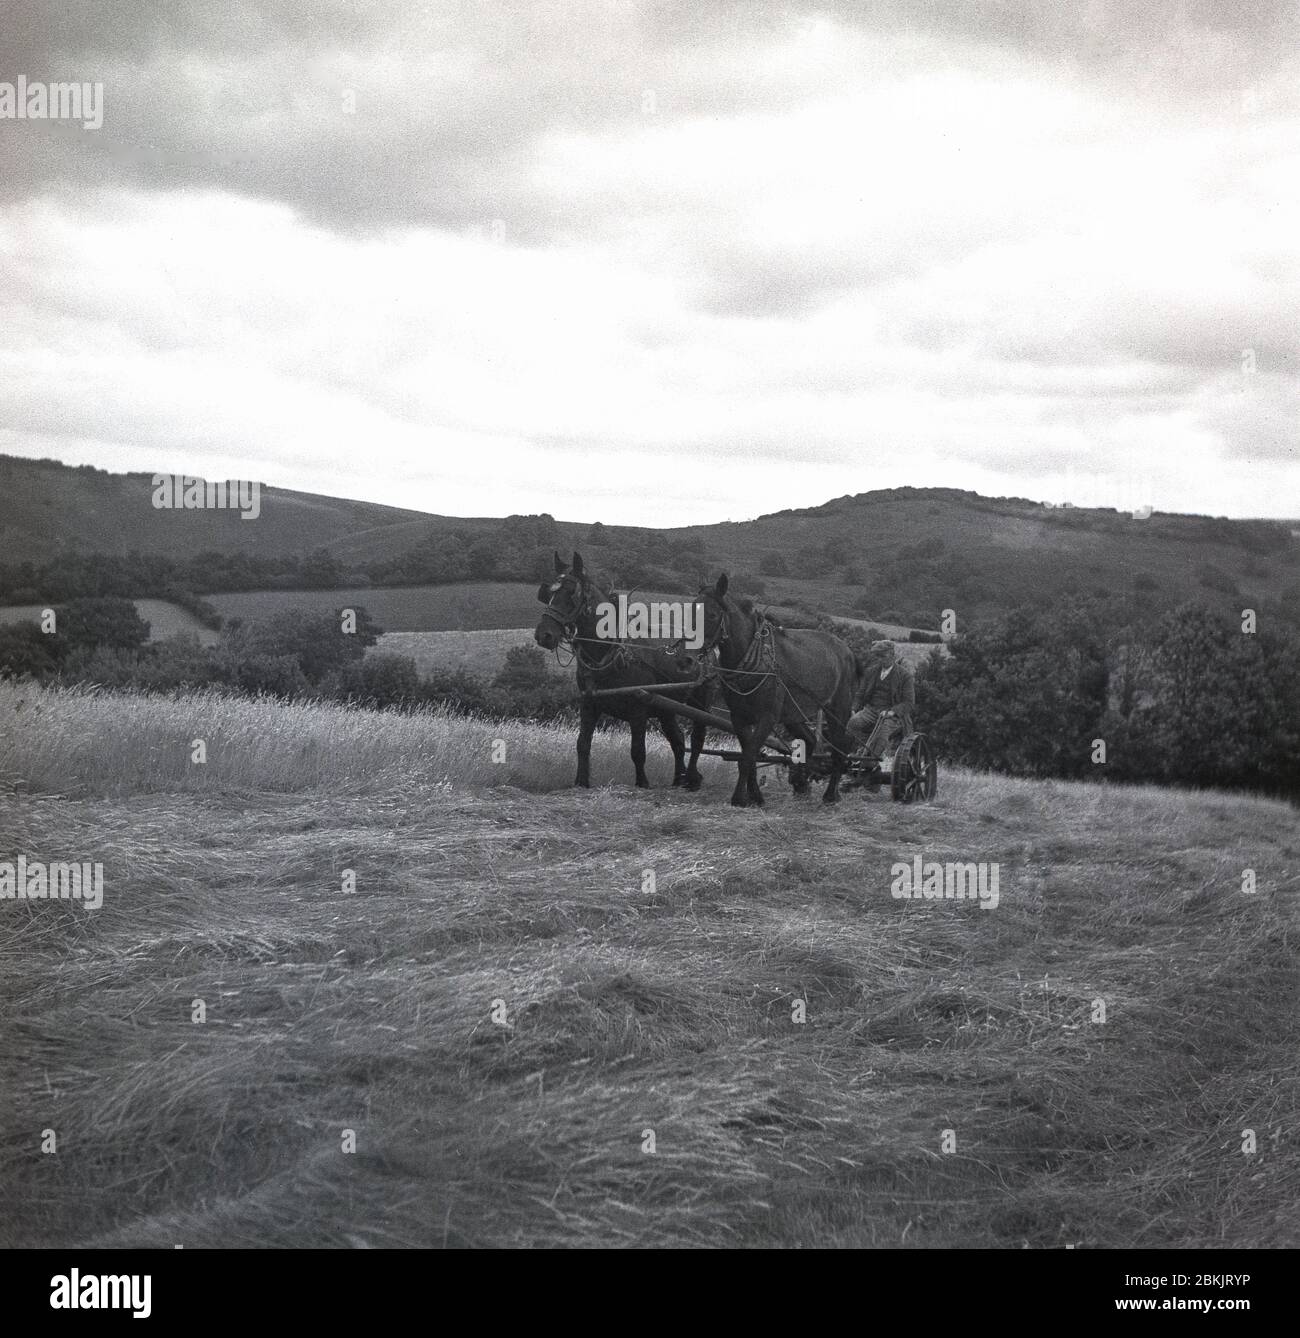 1930er Jahre, historisch, landwirtschaftlich, draußen auf einem Feld auf einem Hügel am Dartmoor Nationalpark, in Chagford, Devon, ein Bauer sitzt auf einem Pferd gezogen, zwei Rädern Bauernhof Schnitter die Ernte. Stockfoto